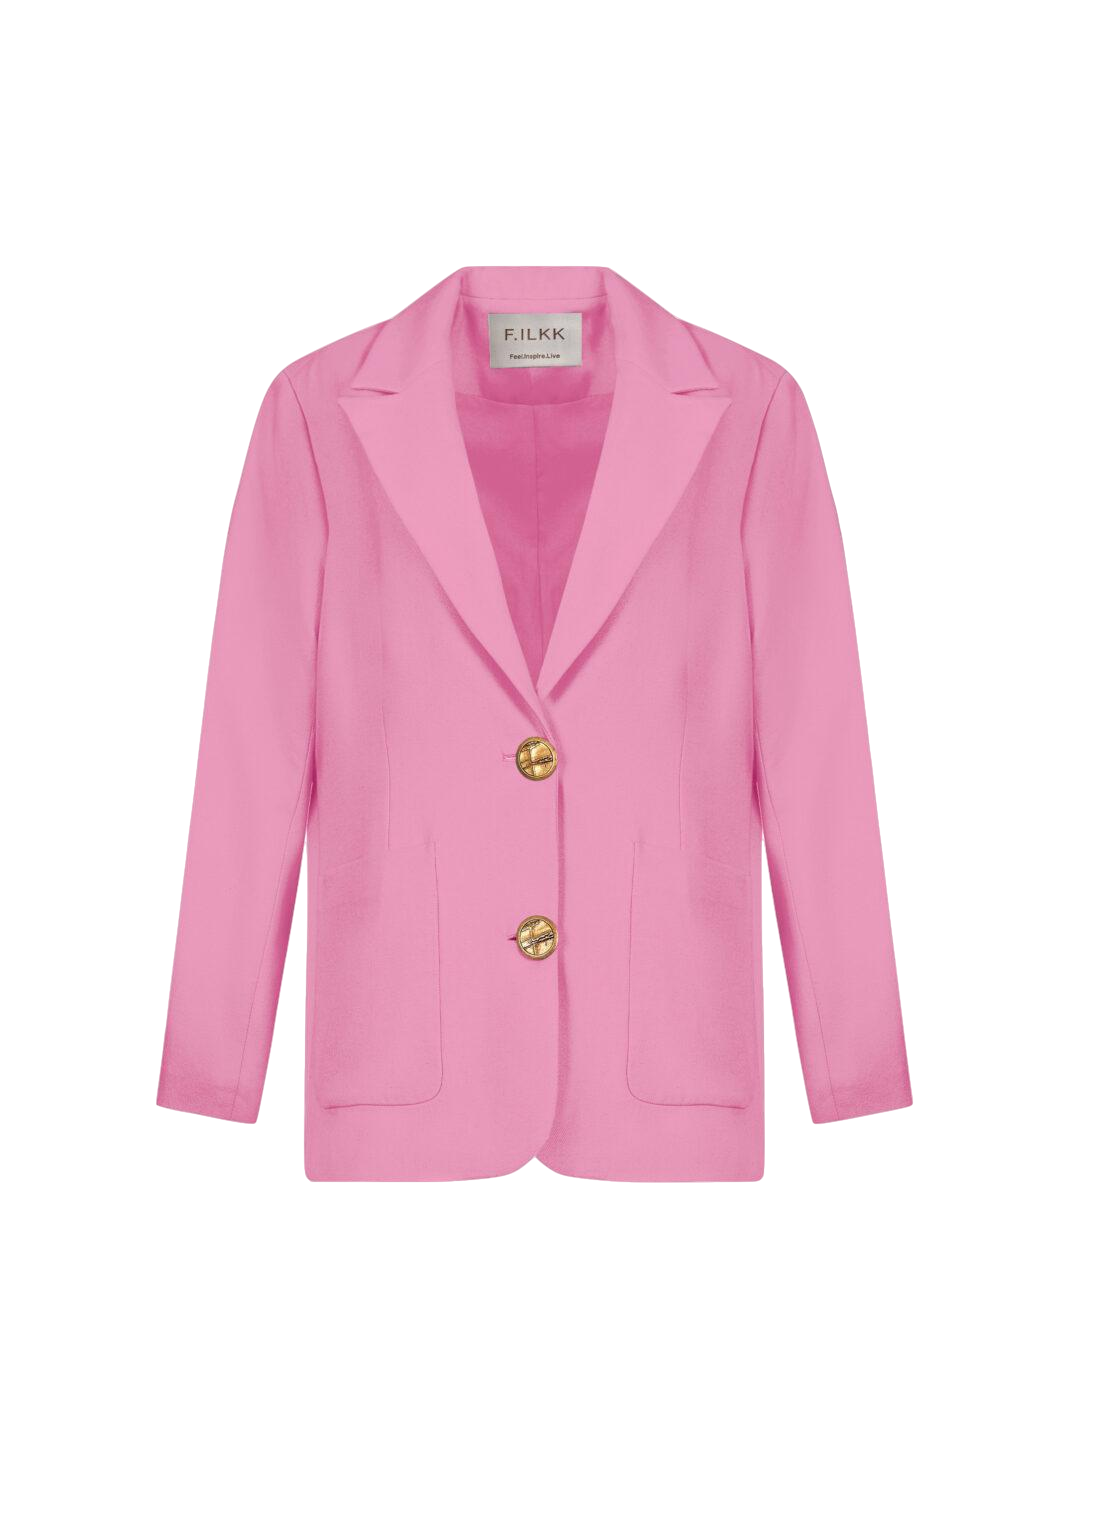 F.ilkk Pink Oversize Blazer